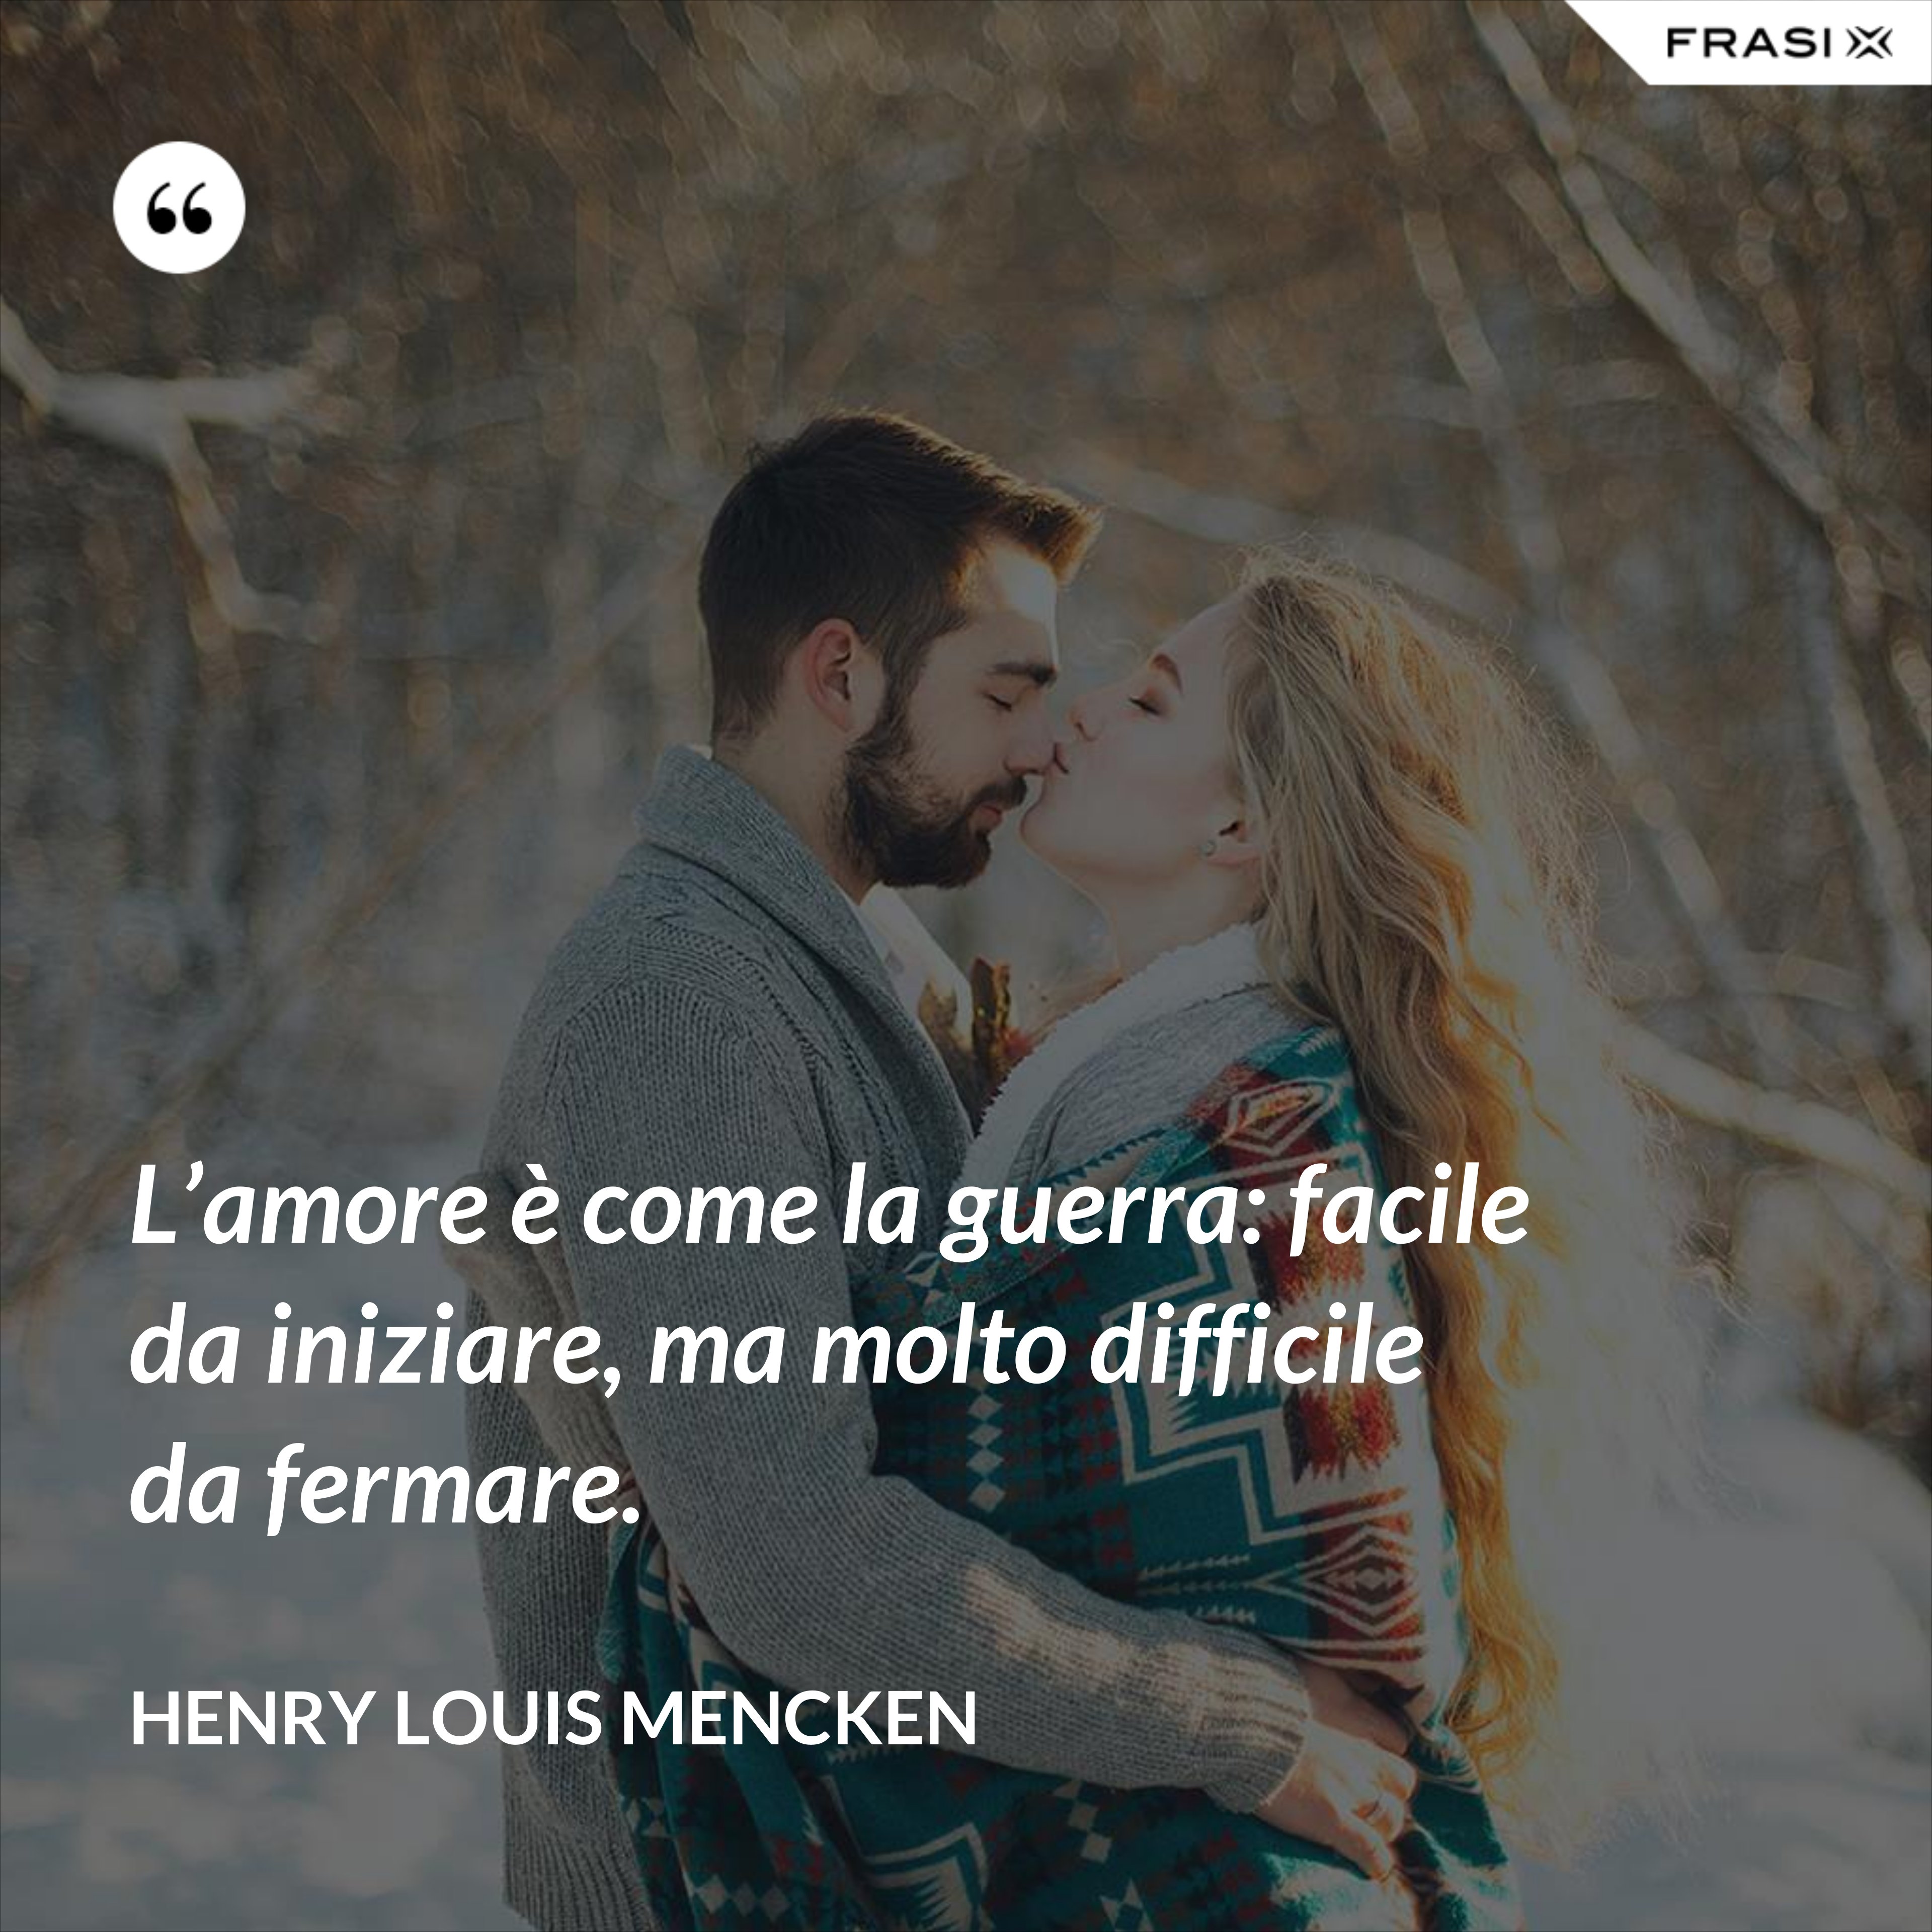 L’amore è come la guerra: facile da iniziare, ma molto difficile da fermare. - Henry Louis Mencken